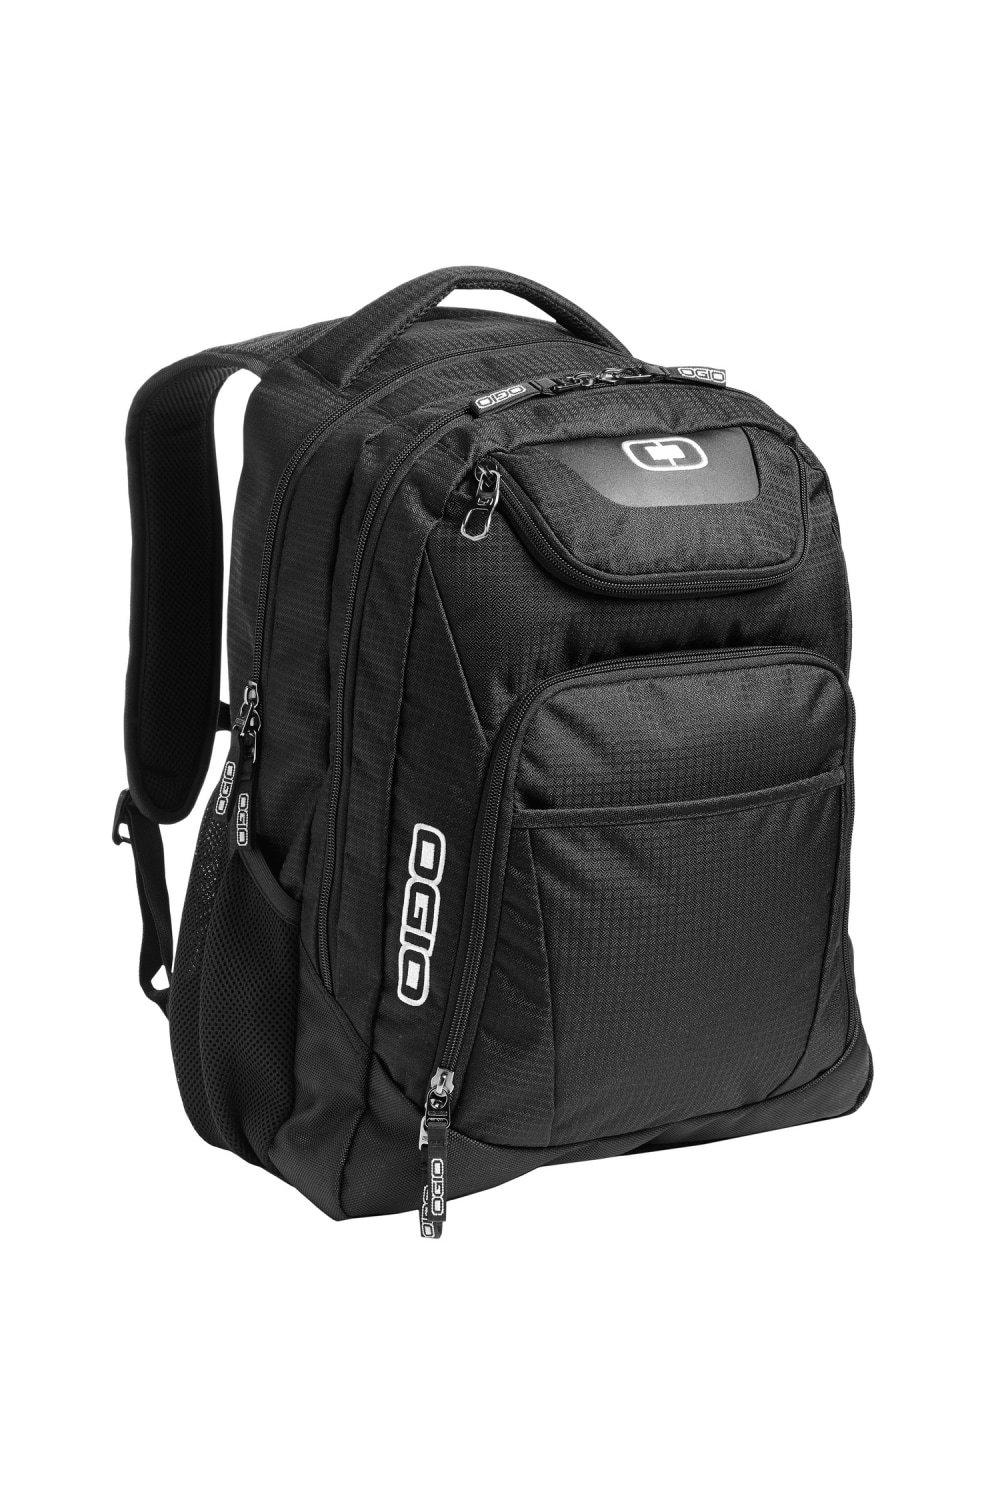 Business Excelsior Laptop Backpack Rucksack